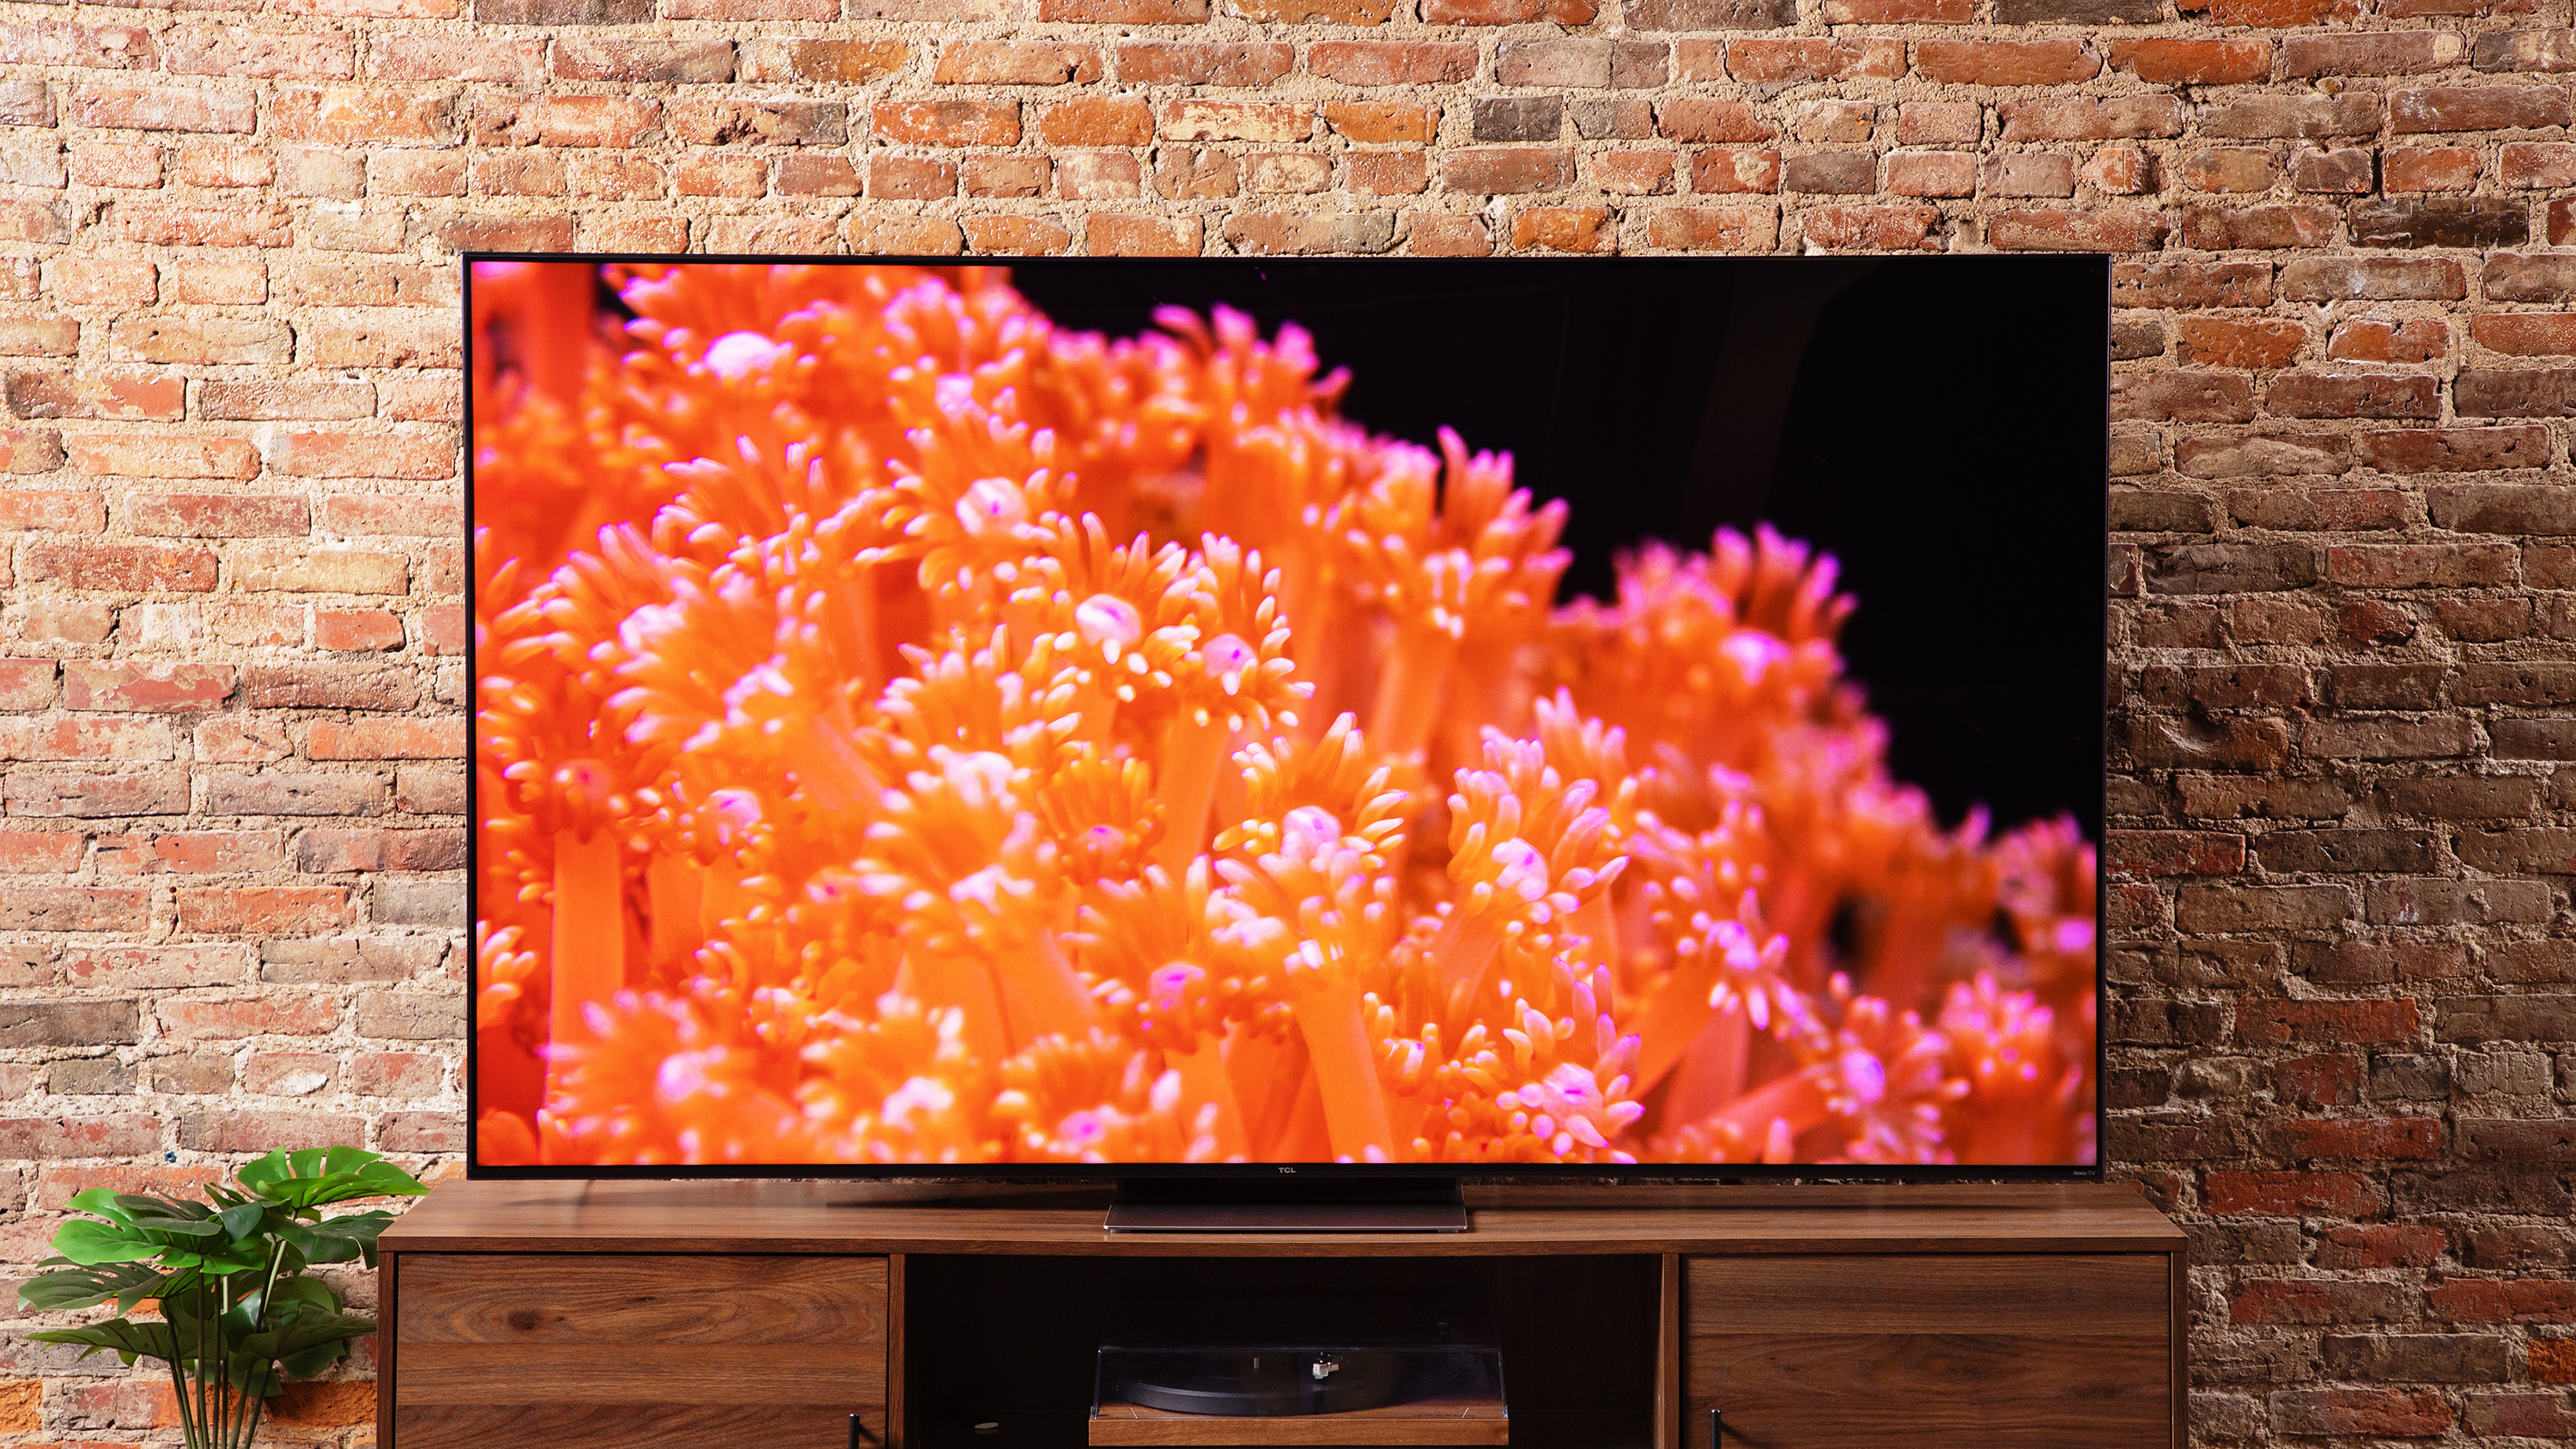 TCL OLED телевизор. Телевизор TCL OLED С огромным экраном. Hisense TV 2023. TCL 55dc760 2018 led, HDR.